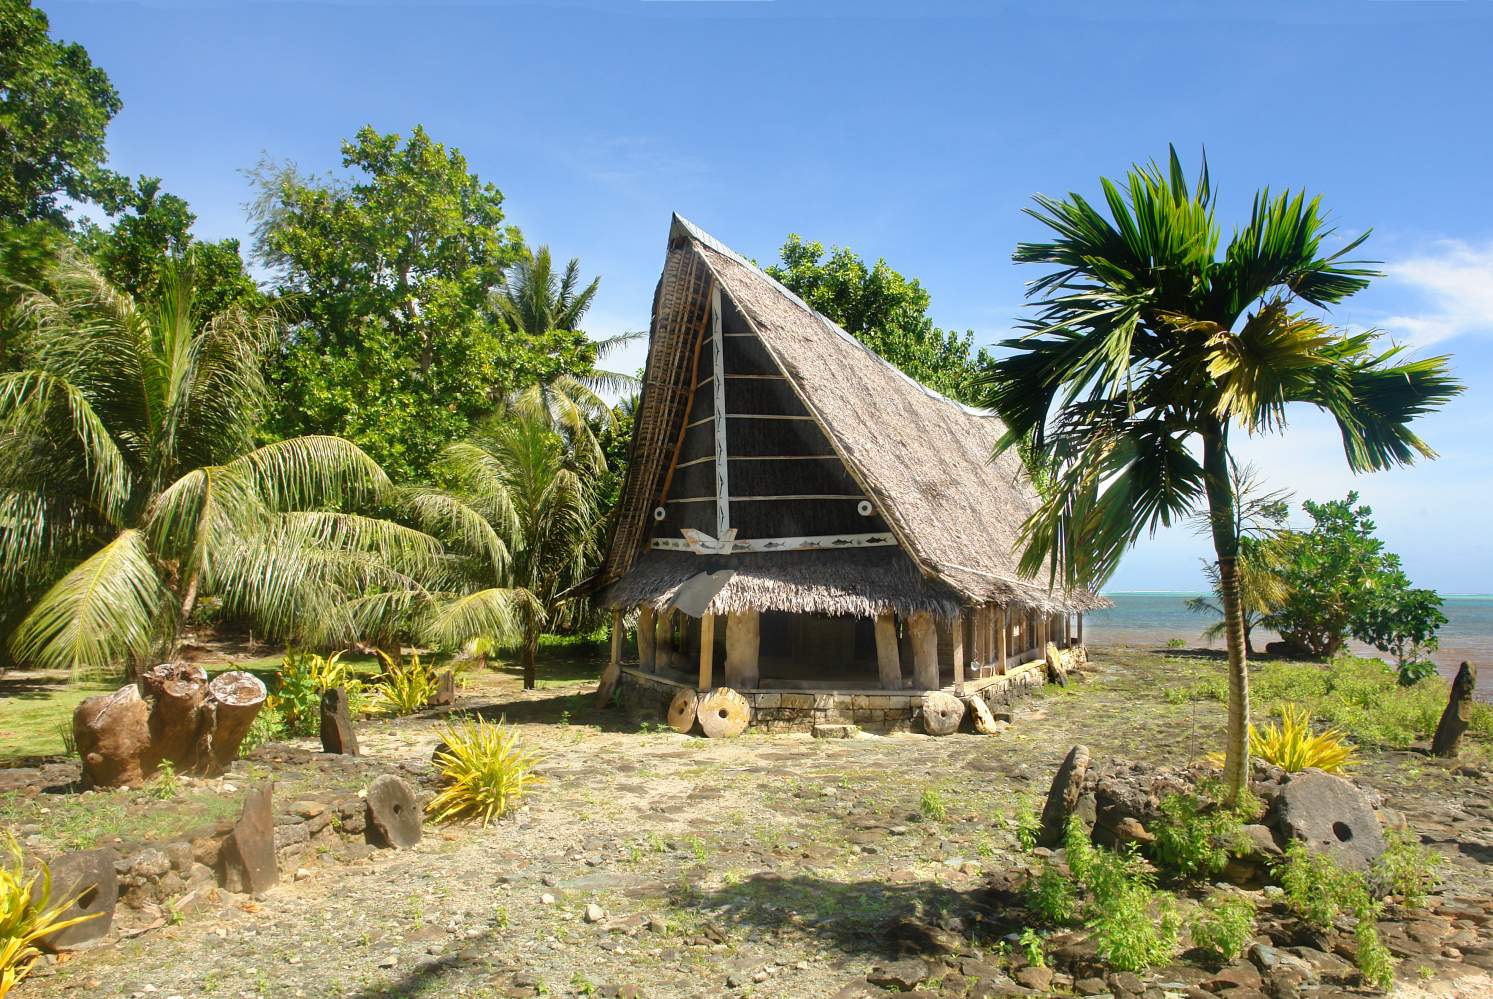 O Ngariy Men's Meetinghouse coñecido como faluw na illa de Yap, Micronesia